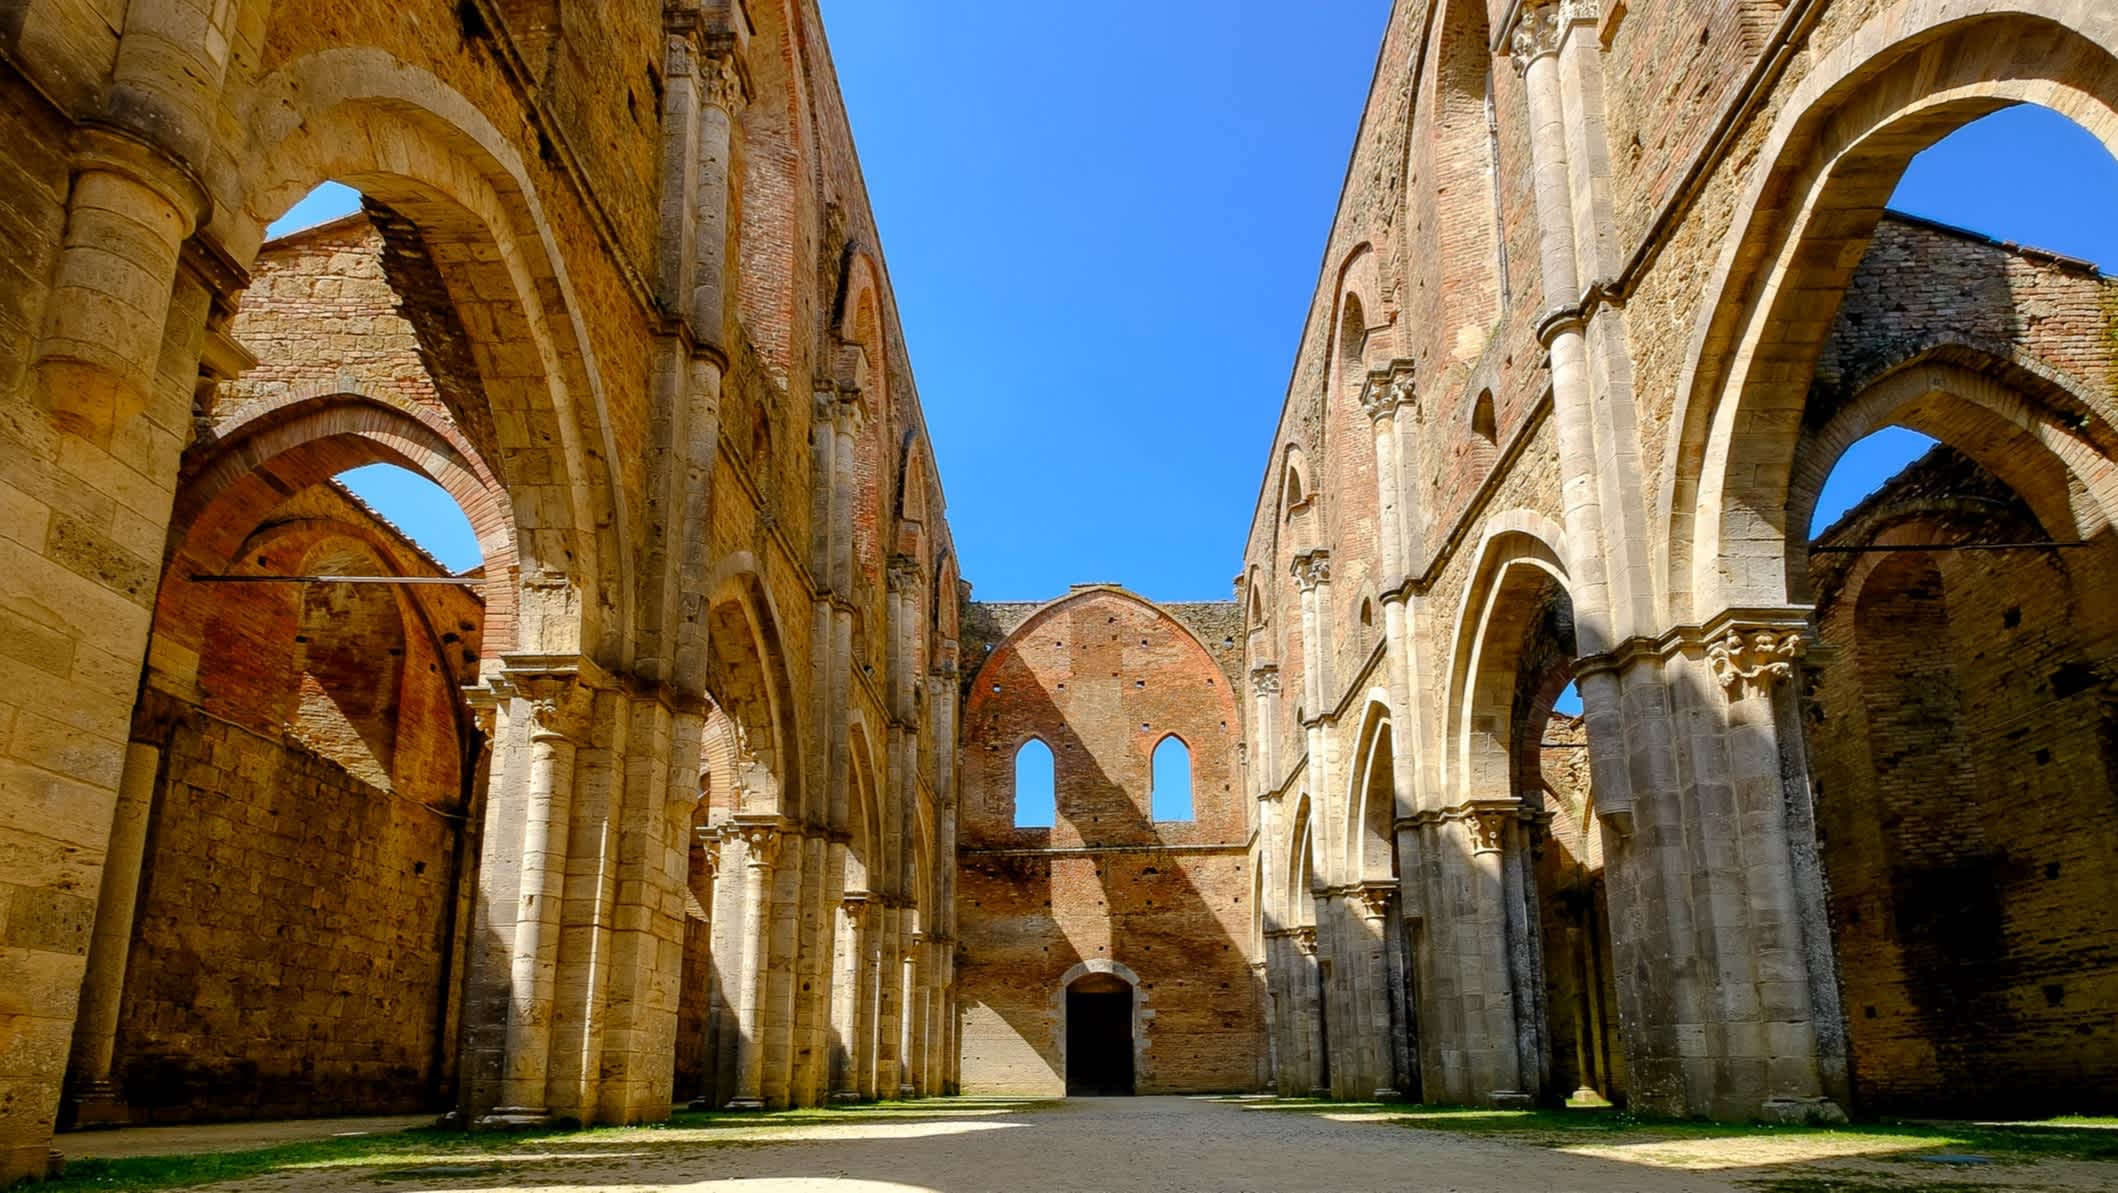 San Galgano : l'ancienne abbaye de San Galgano, un magnifique exemple d'architecture romane en Toscane. Chiusdino, Sienne, Italie.